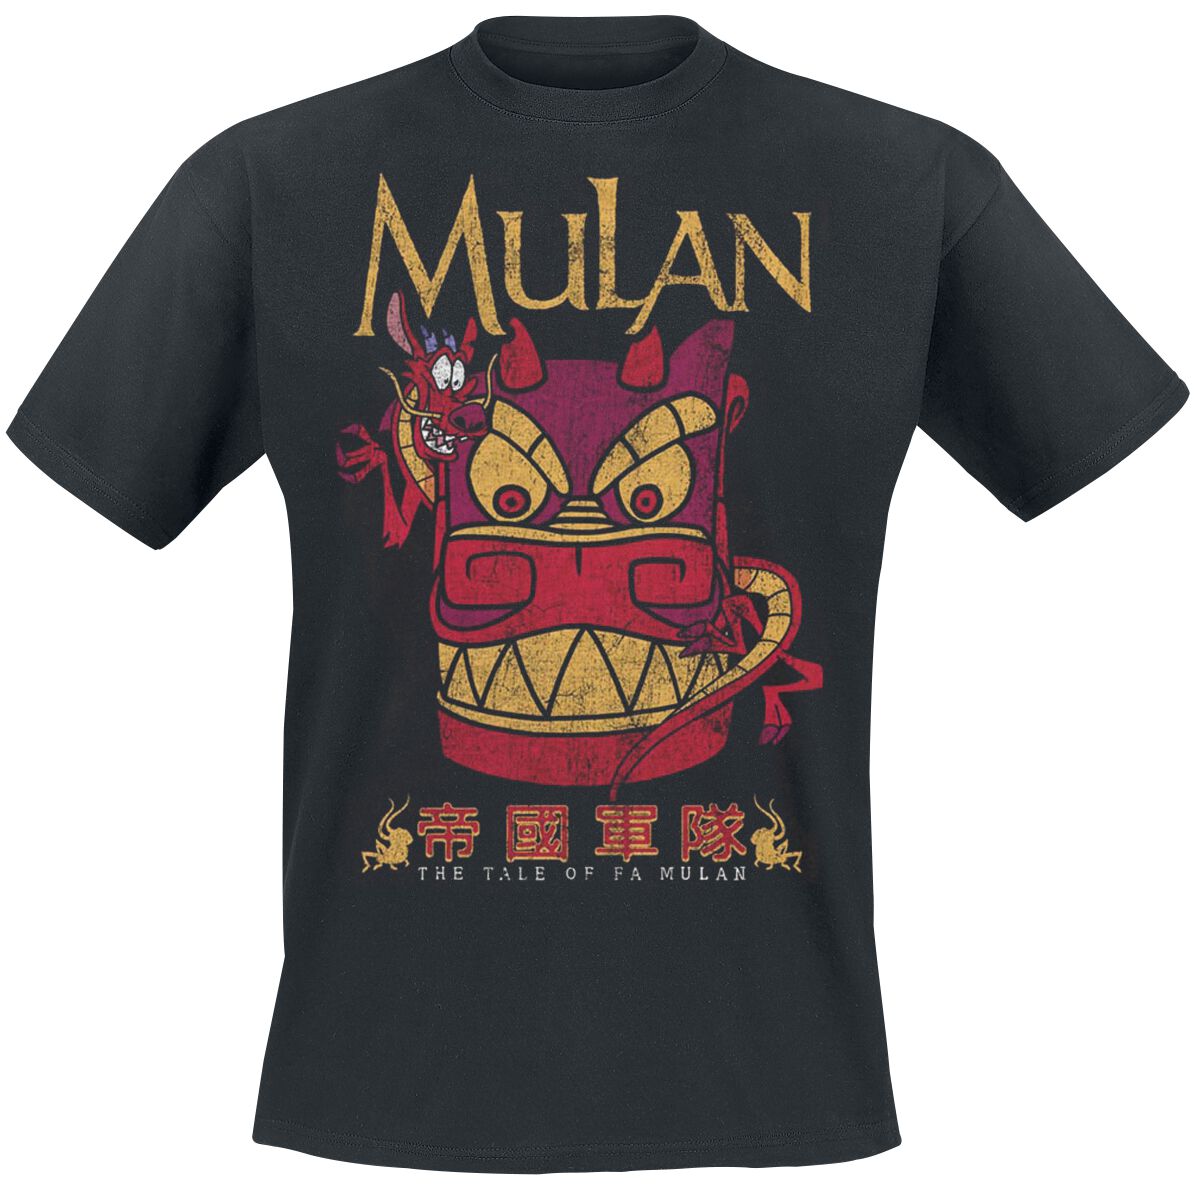 Mulan Mushu - The Tale Of Fa Mulan T-Shirt black